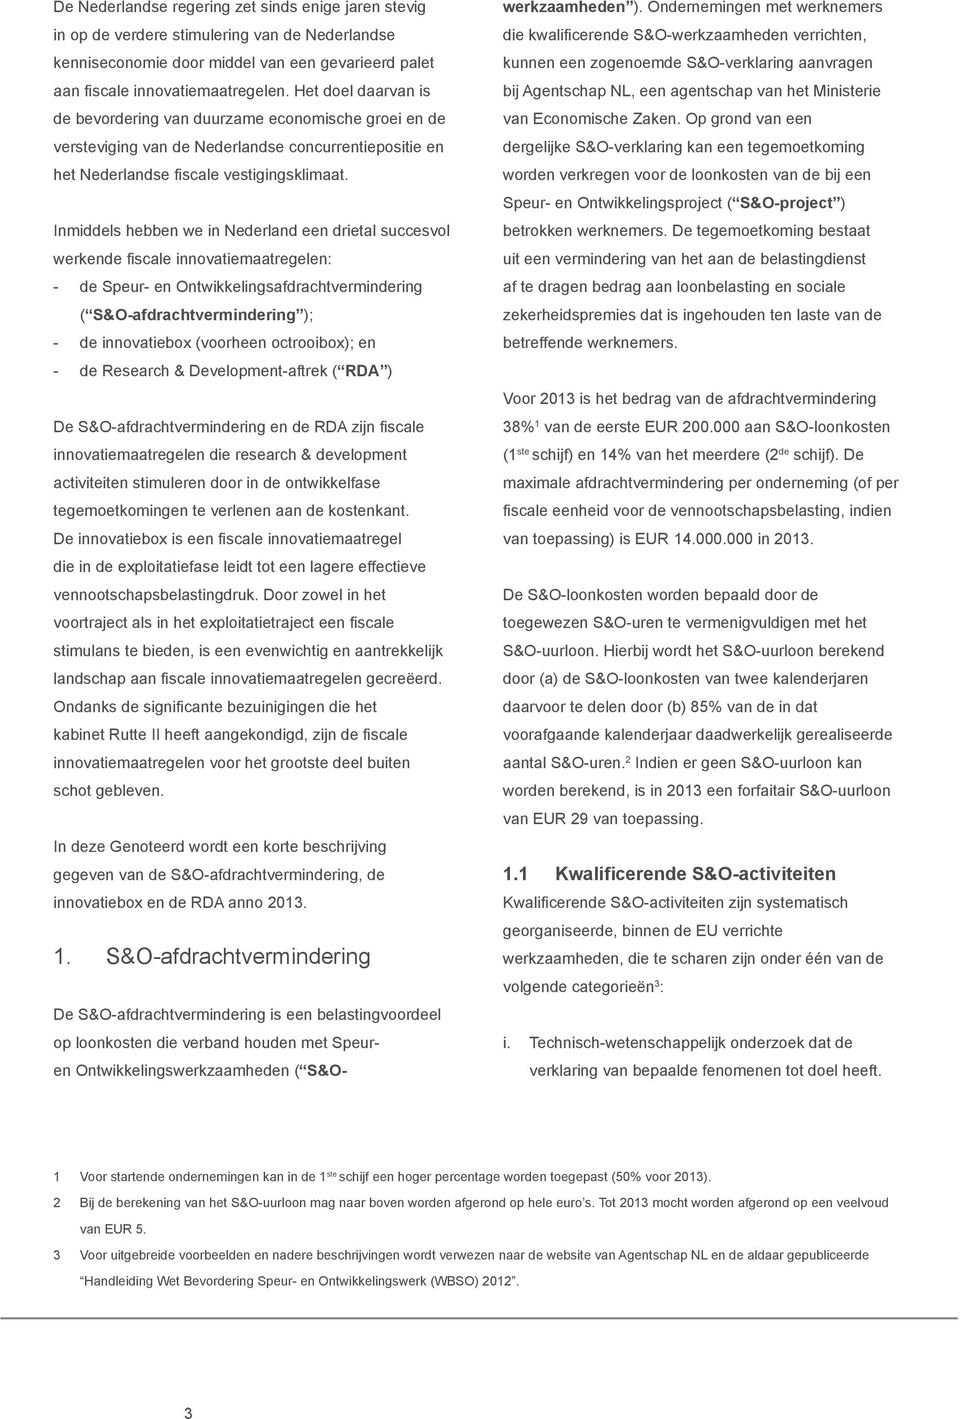 Inmiddels hebben we in Nederland een drietal succesvol werkende fiscale innovatiemaatregelen: - de Speur- en Ontwikkelingsafdrachtvermindering ( S&O-afdrachtvermindering ); - de innovatiebox